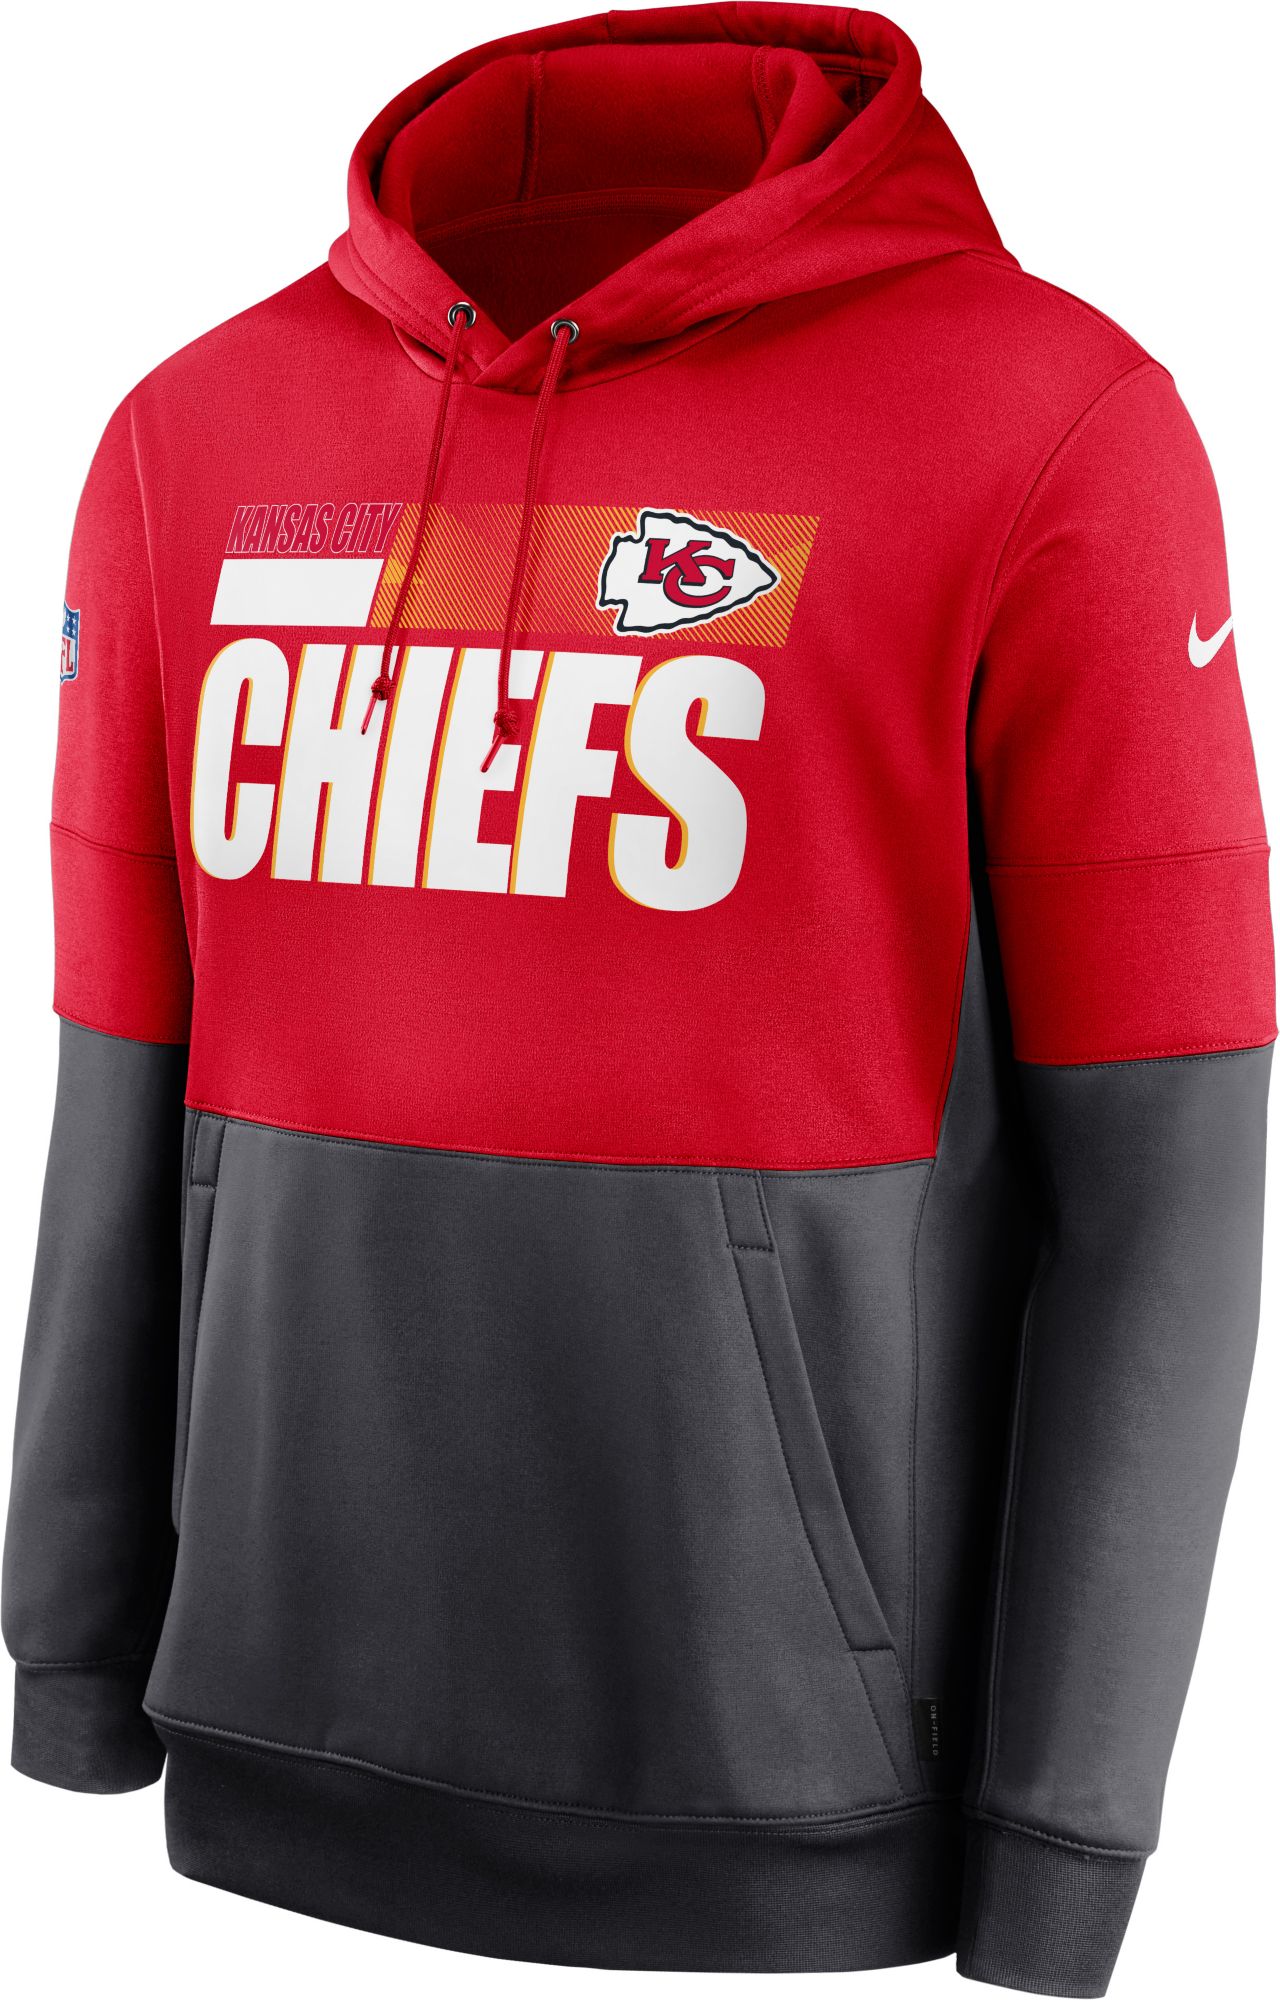 chiefs sideline jacket